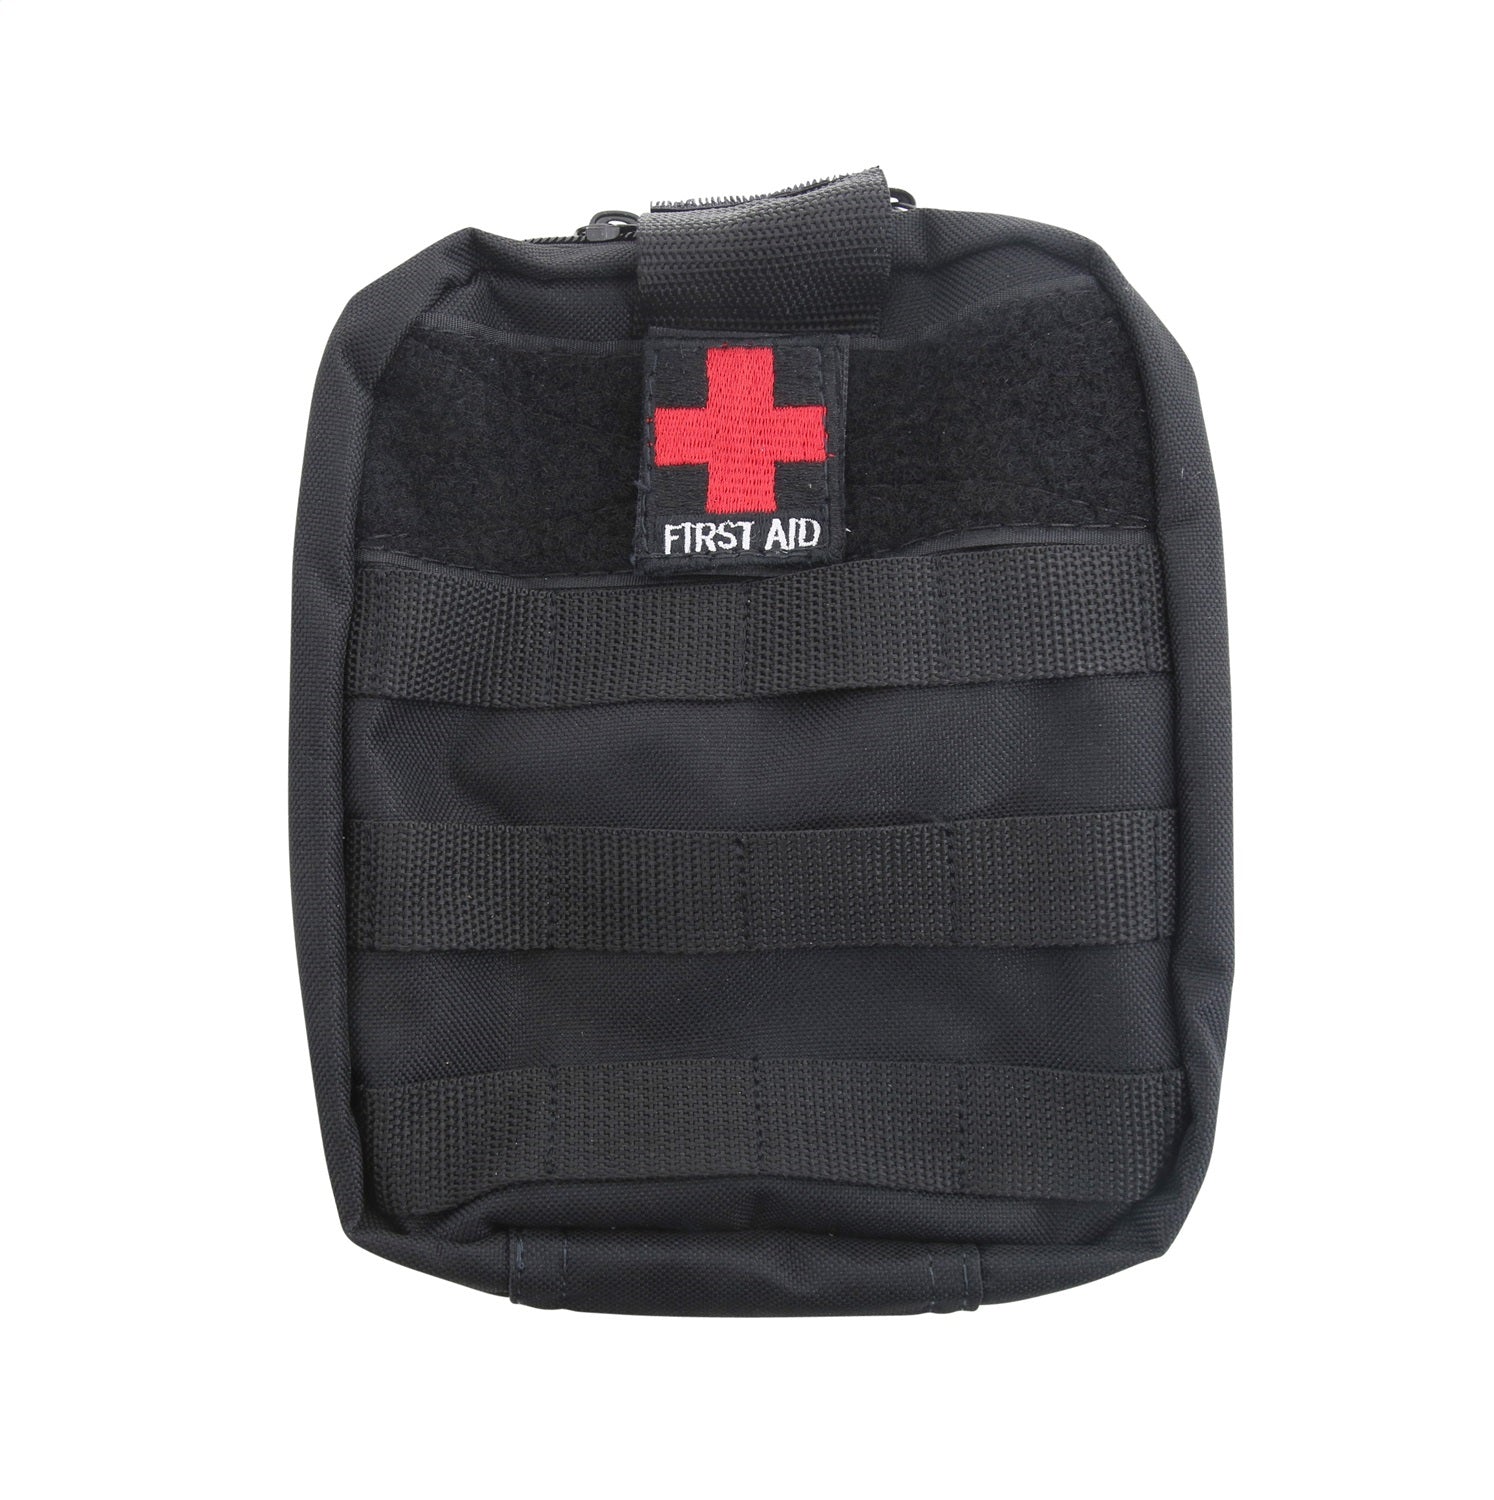 Smittybilt 769541 First Aid Storage Bag